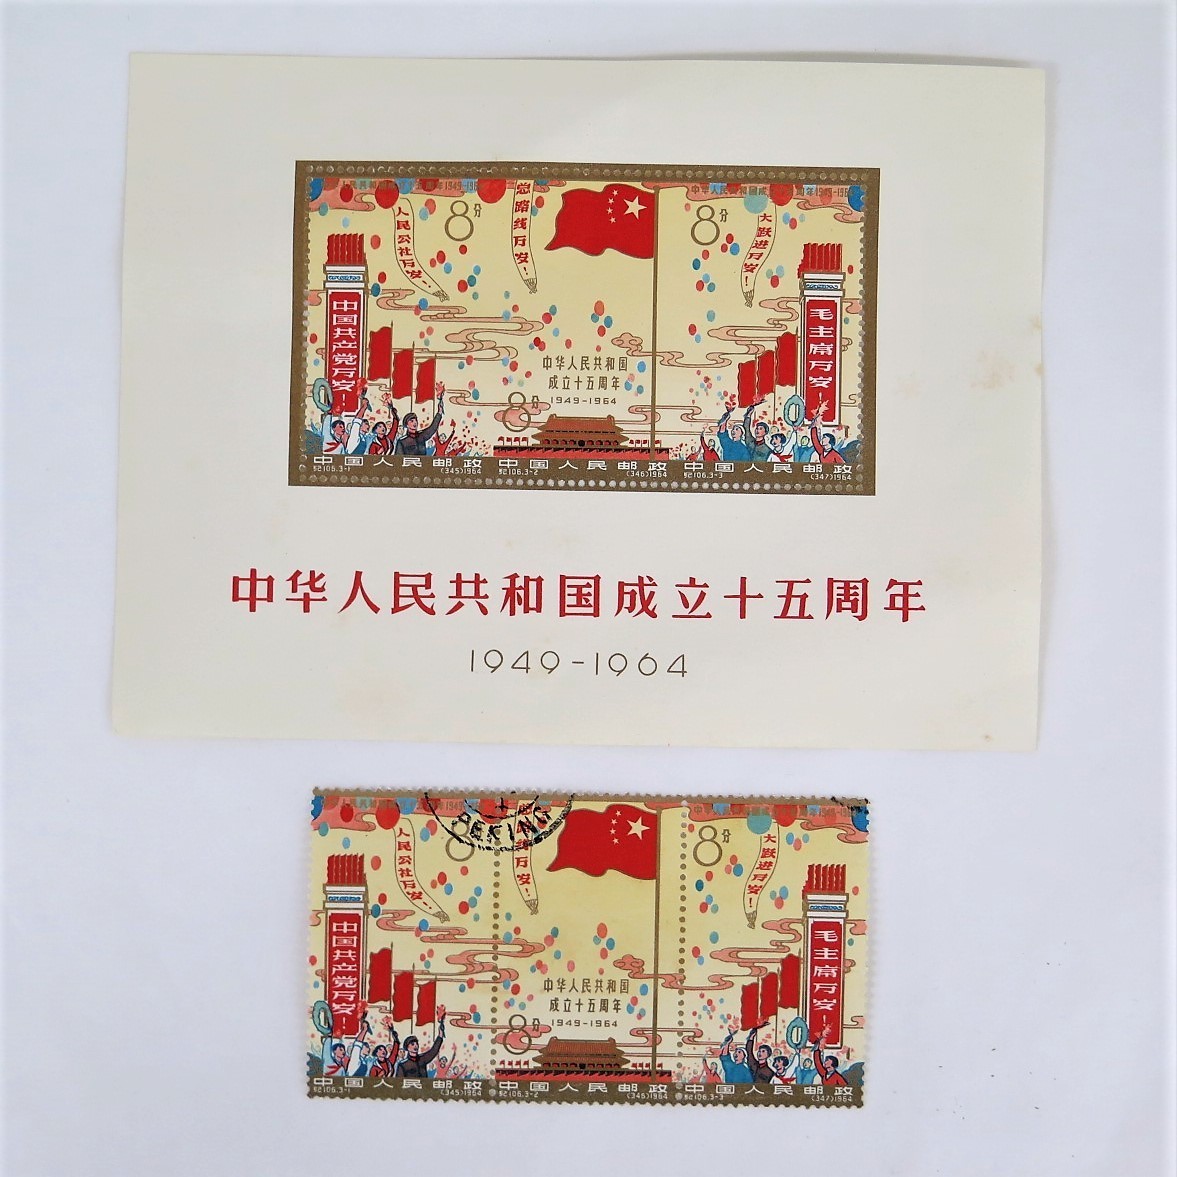 中華人民共和国 成立15周年記念切手 1964年中国切手 紀106 希少レア品